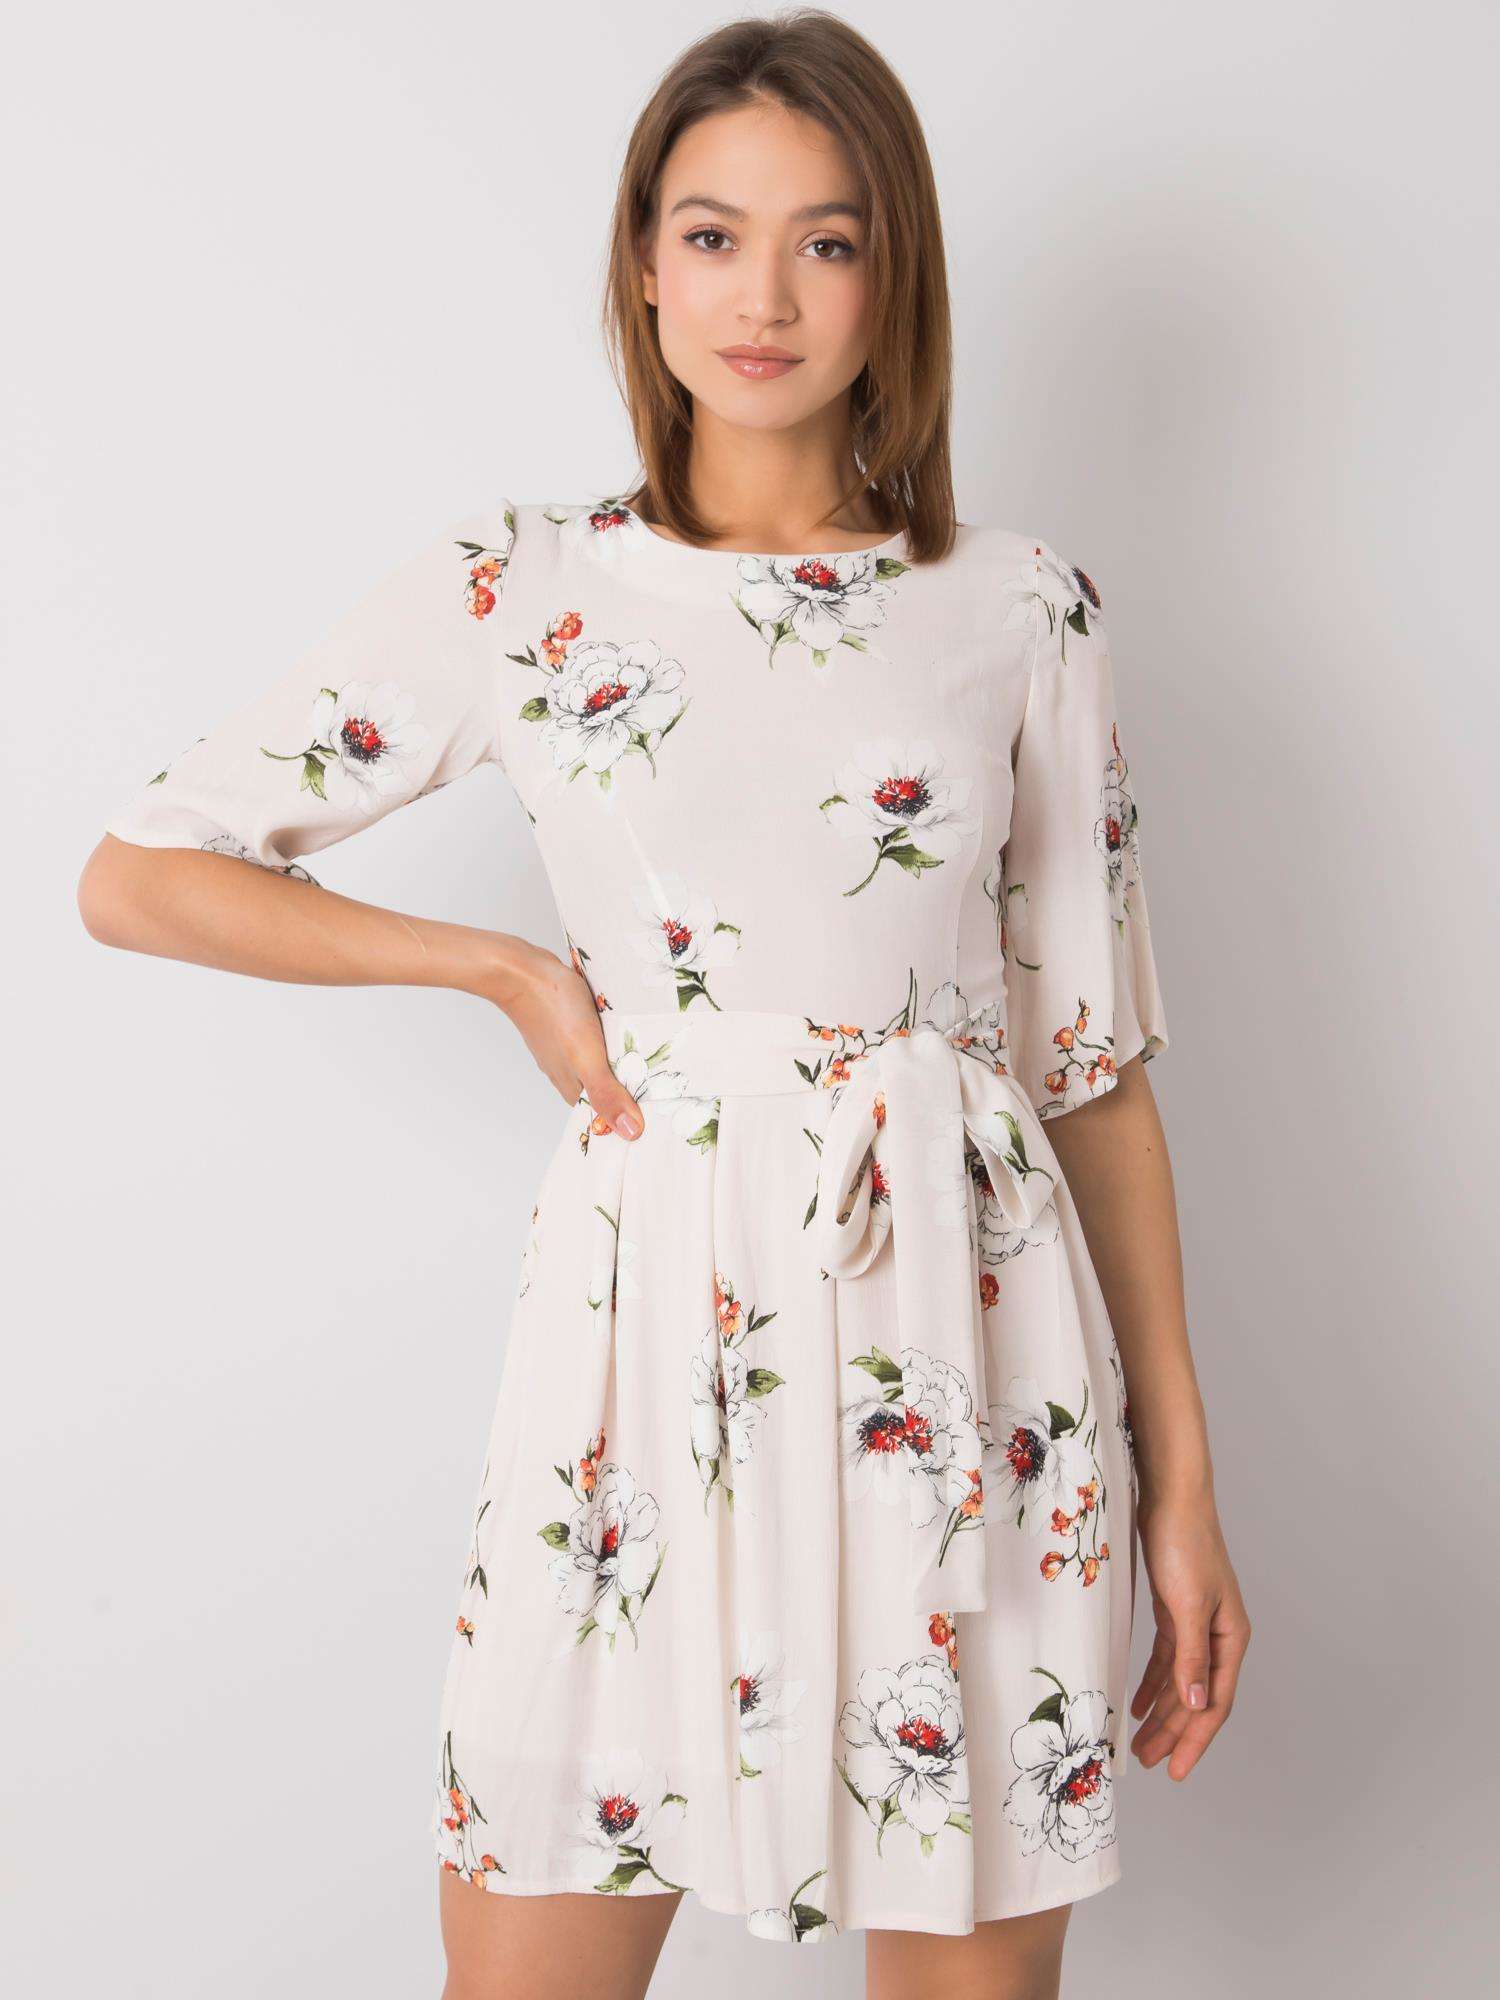 Béžové dámské šaty se vzorem květin LK-SK-507547.16P-beige Velikost: 44